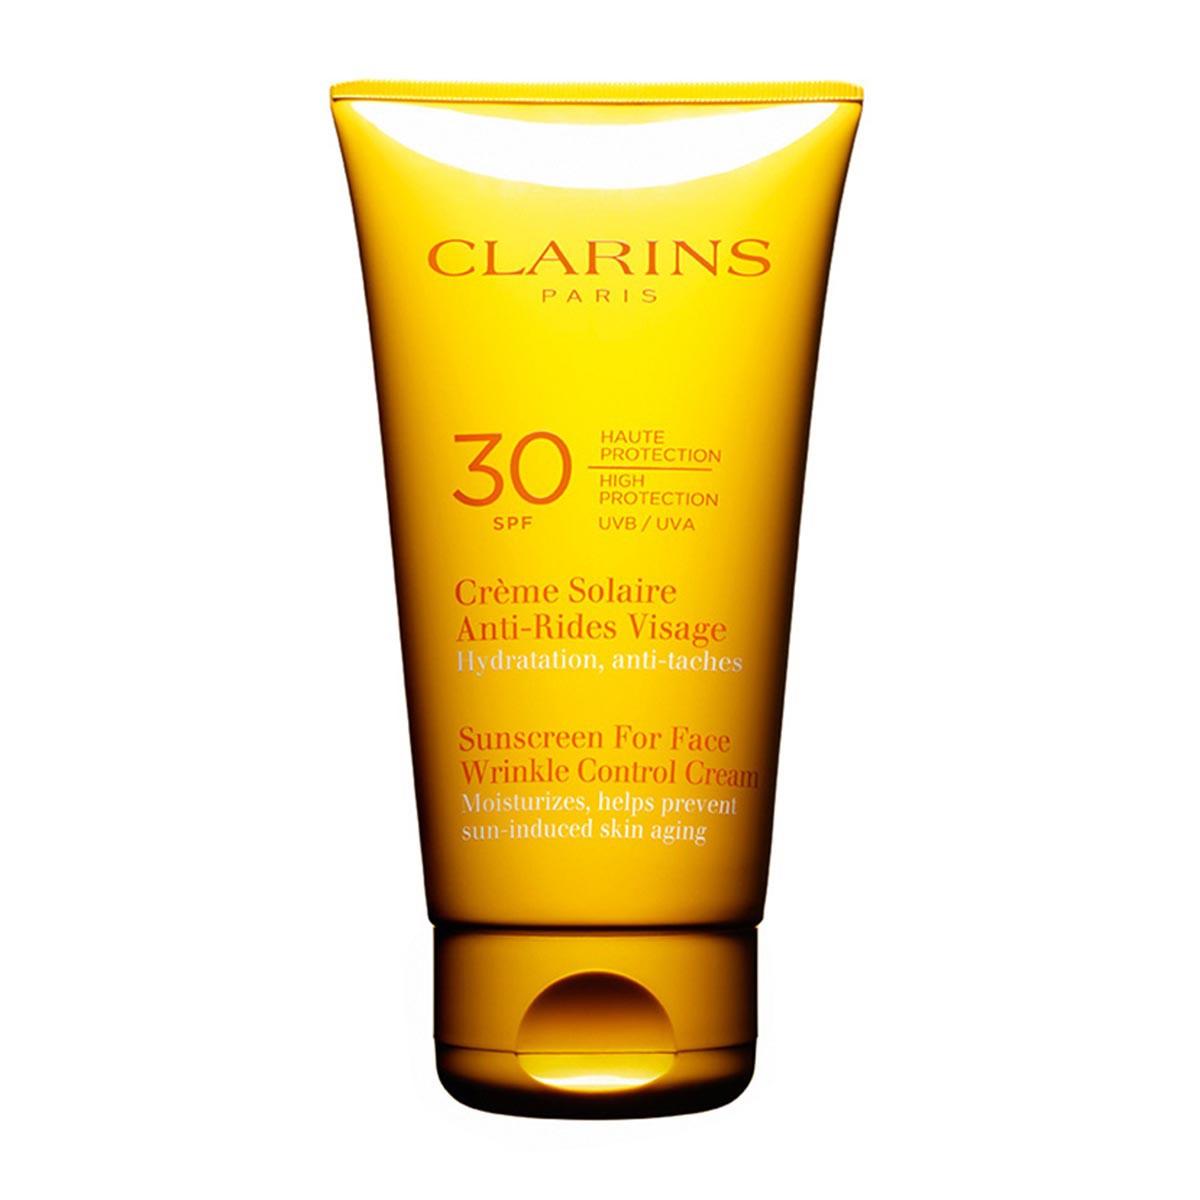 clarins-creme-solaire-antirides-visage-spf30-75ml